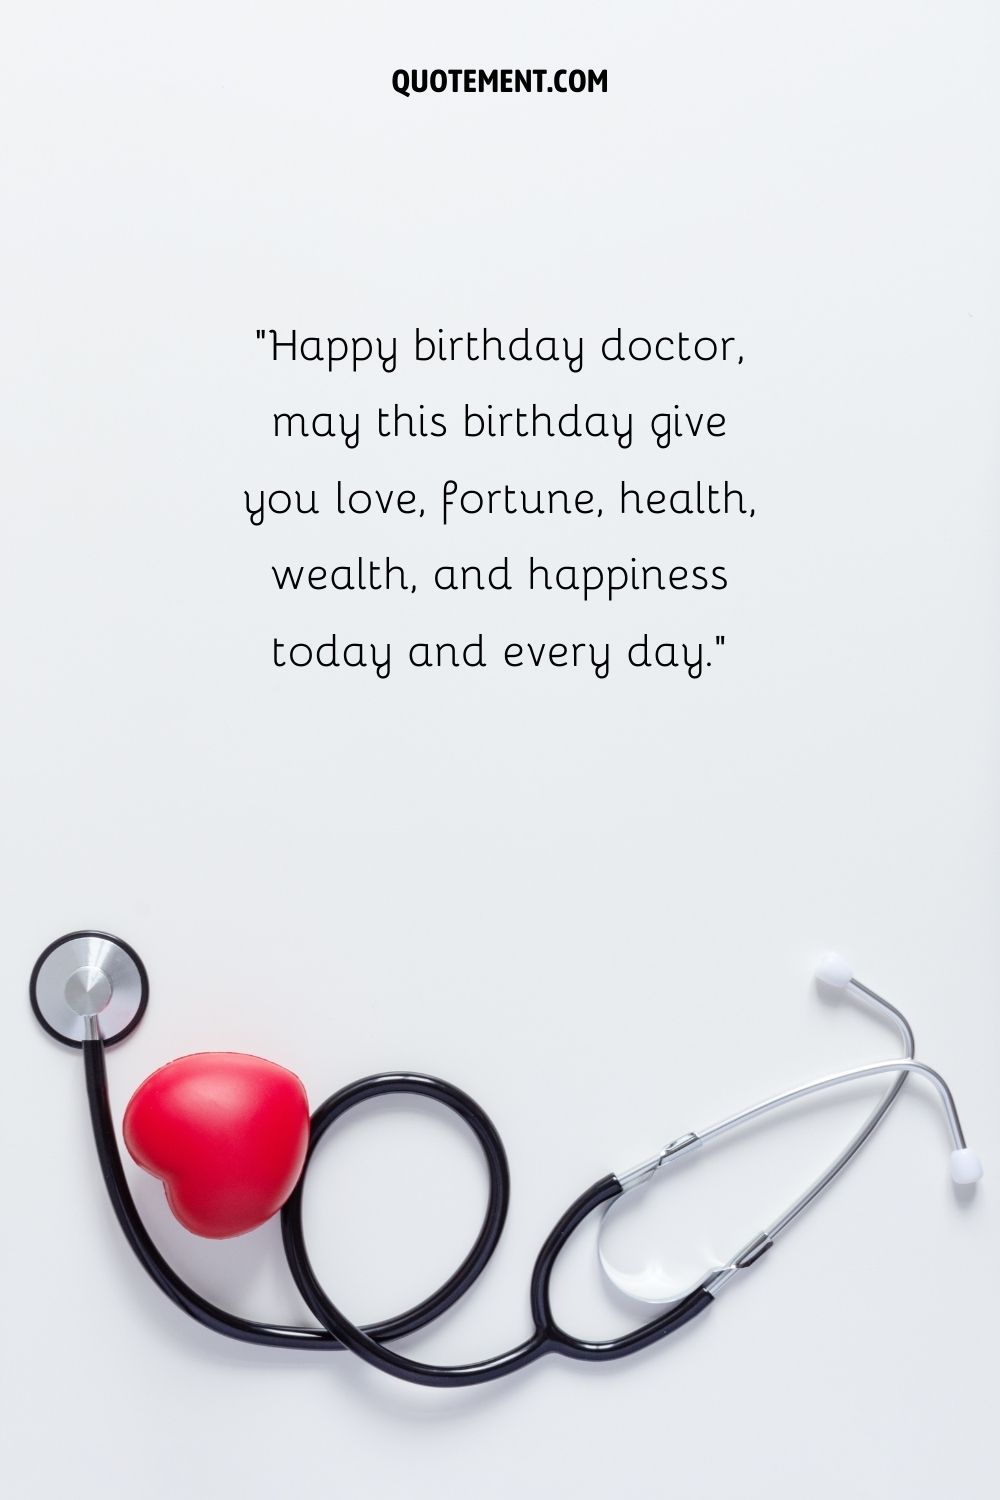 estetoscopio negro enroscado representando deseos de cumpleaños para el dr.